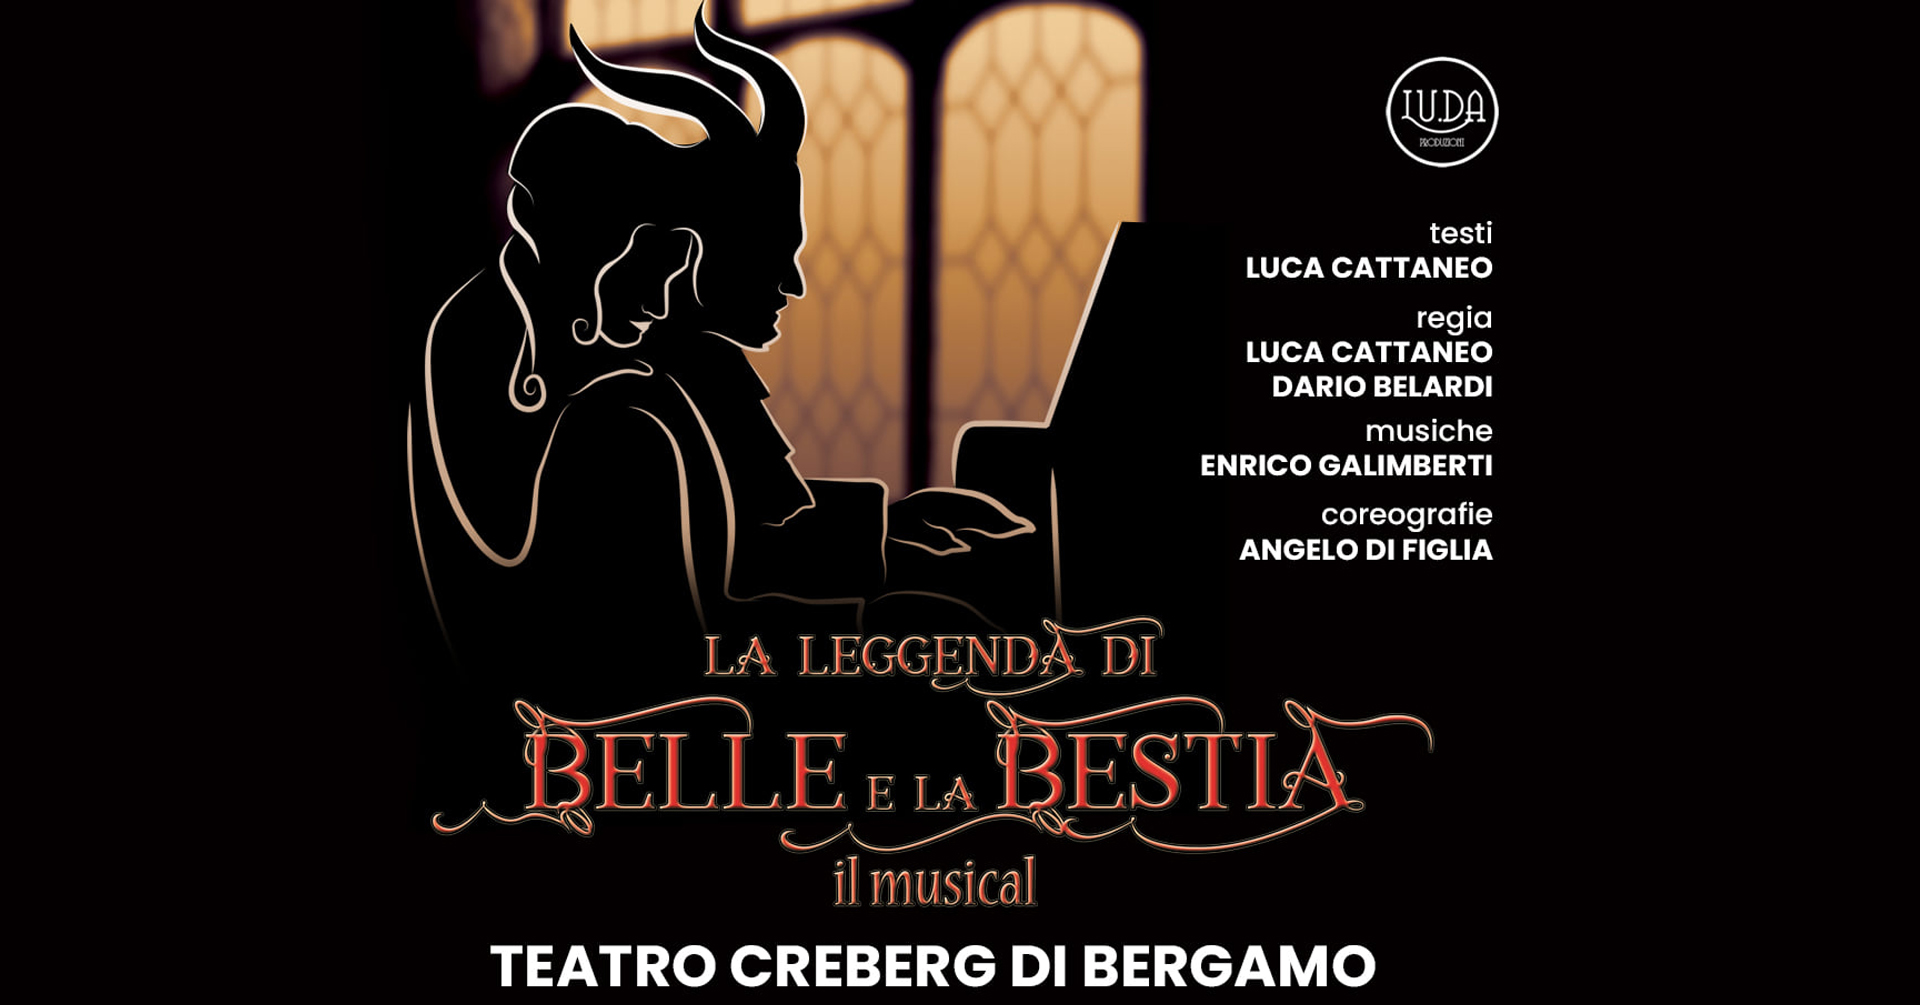 La leggenda di Belle e la Bestia - il musical